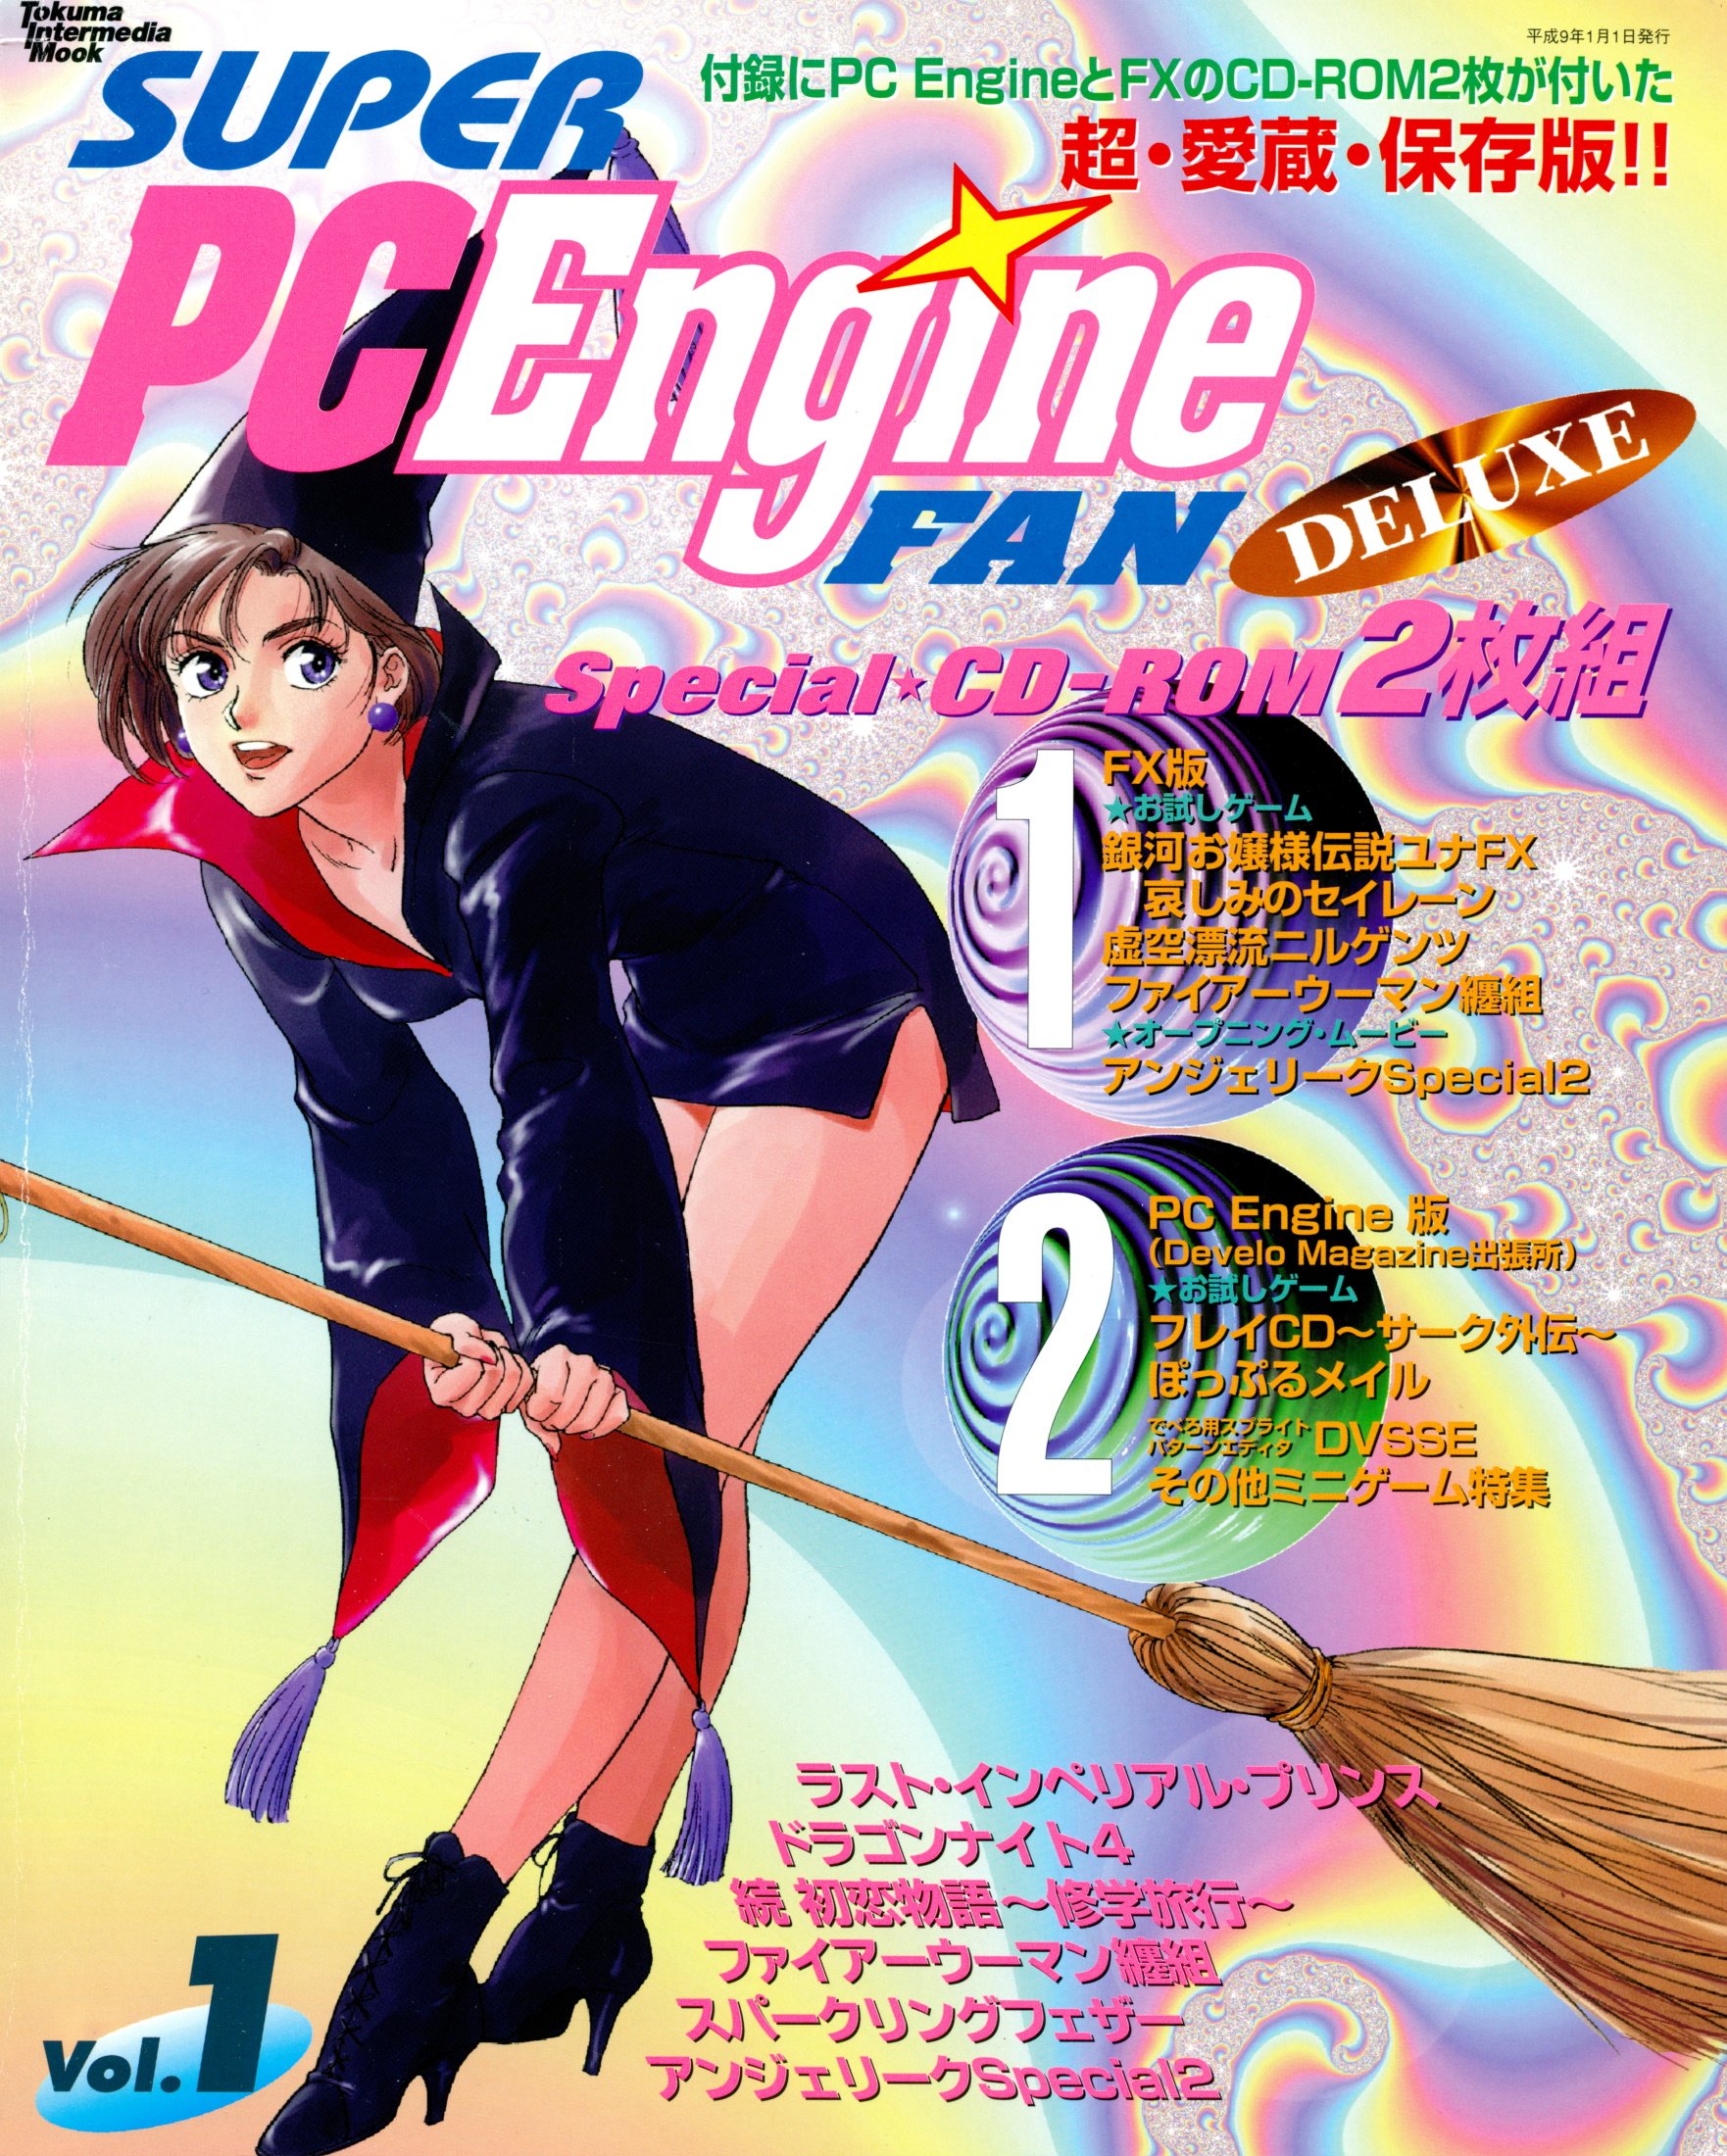 Super PC Engine Fan Deluxe Volume 1 - Super PC Engine Fan Deluxe 